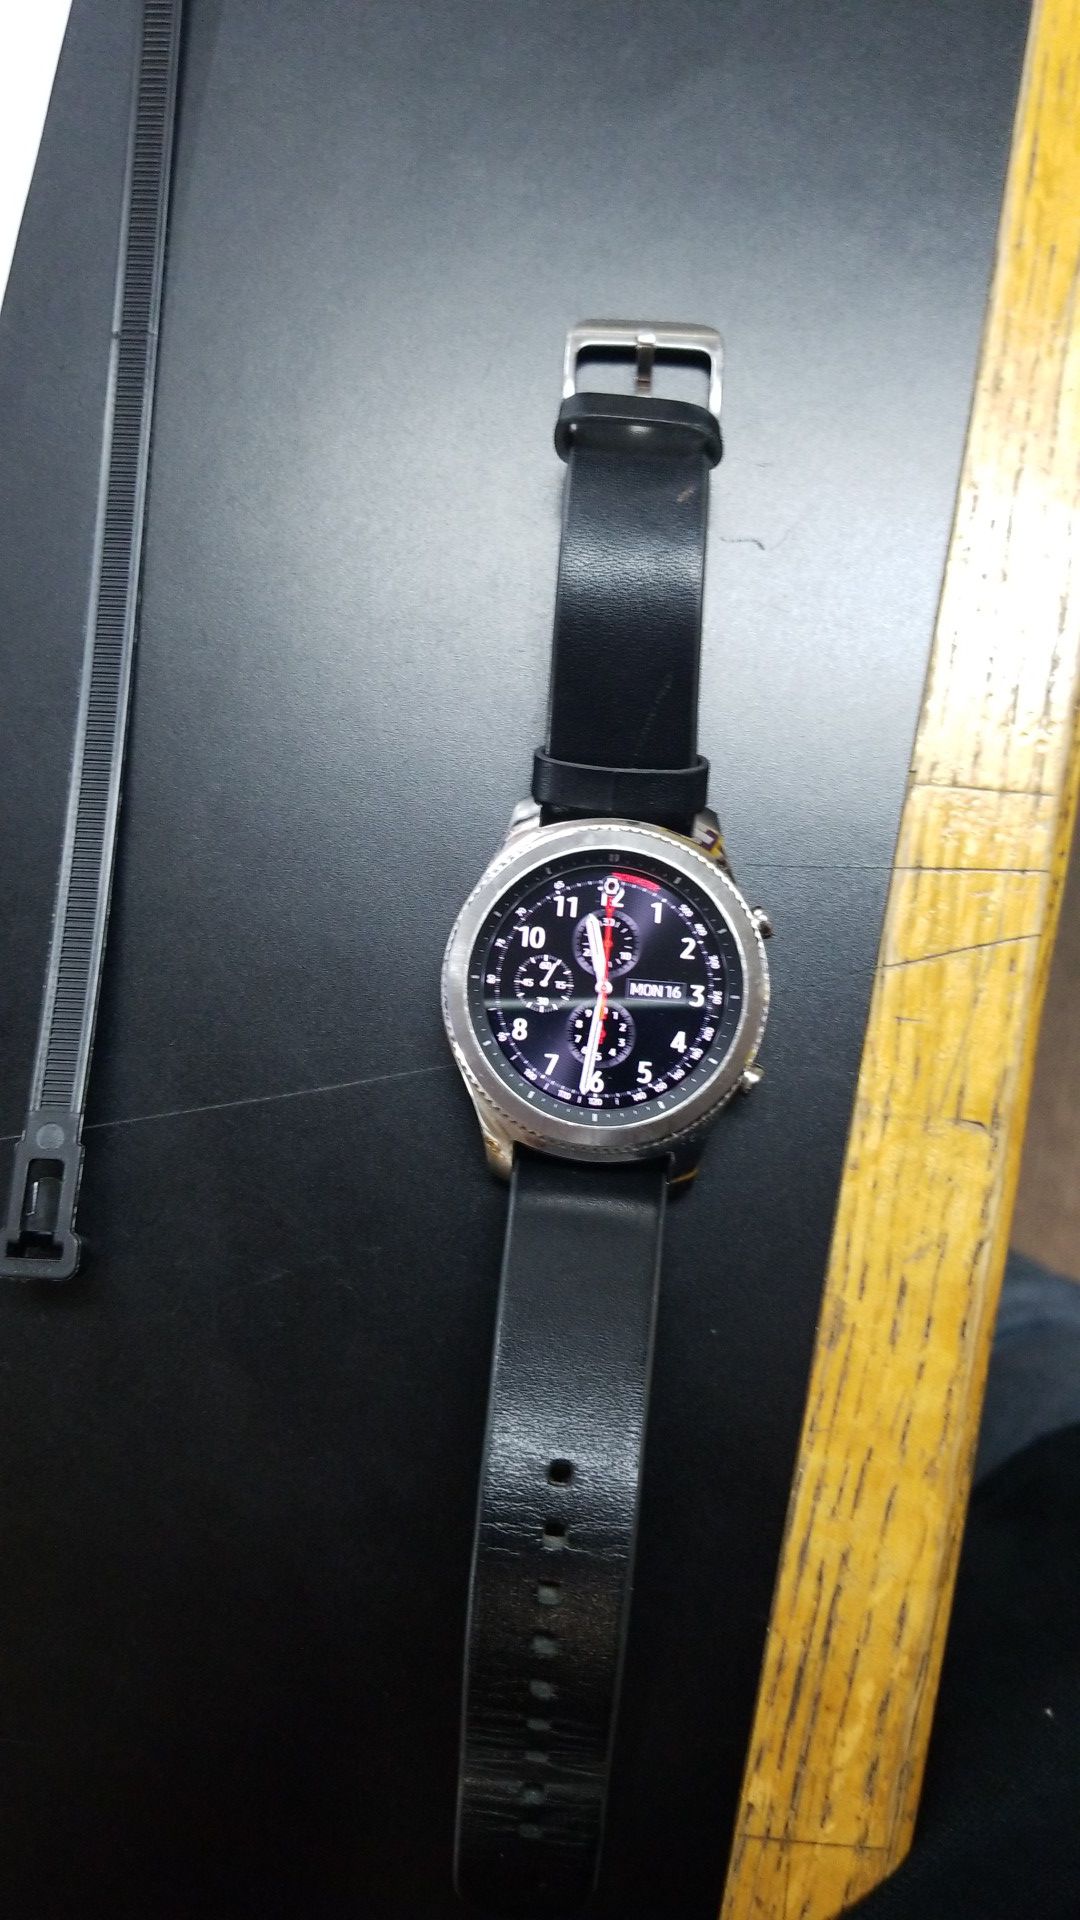 Samsung 3rd gen watch